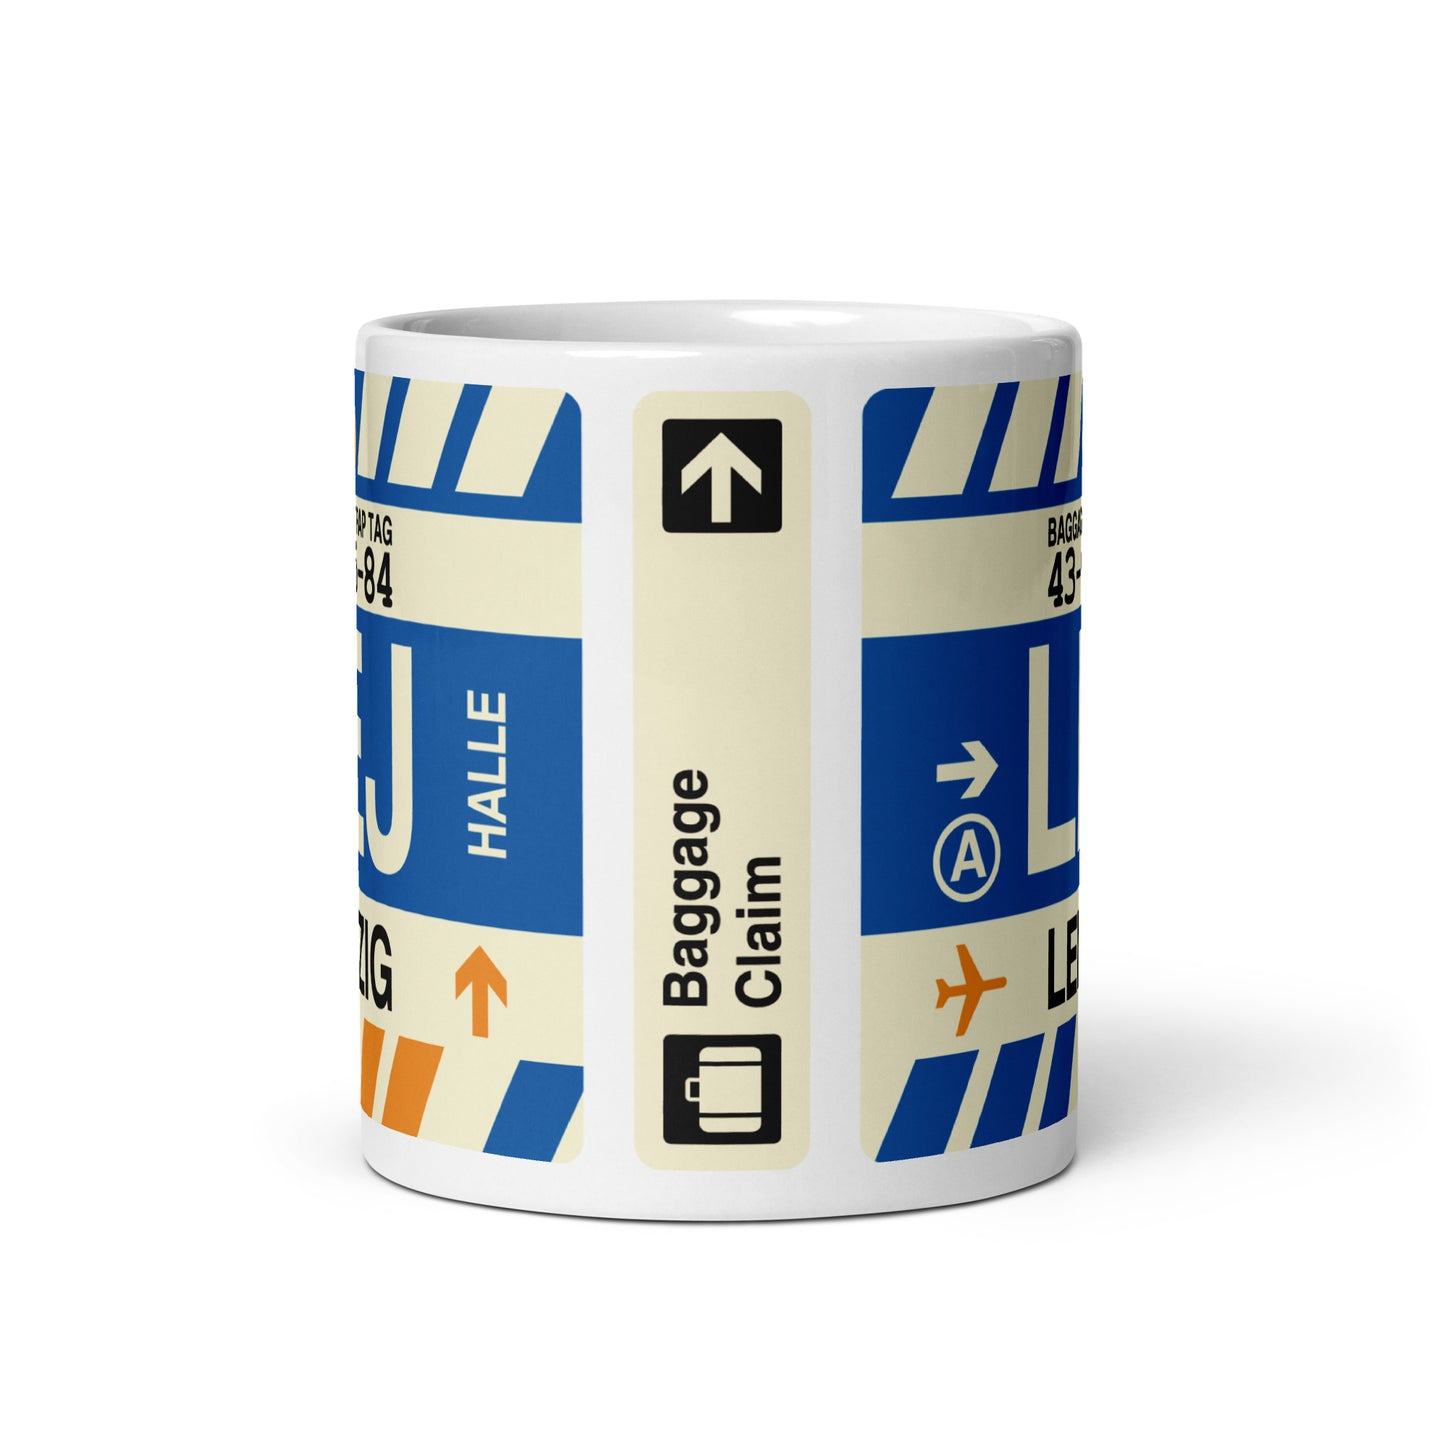 Travel-Themed Coffee Mug • LEJ Leipzig • YHM Designs - Image 02